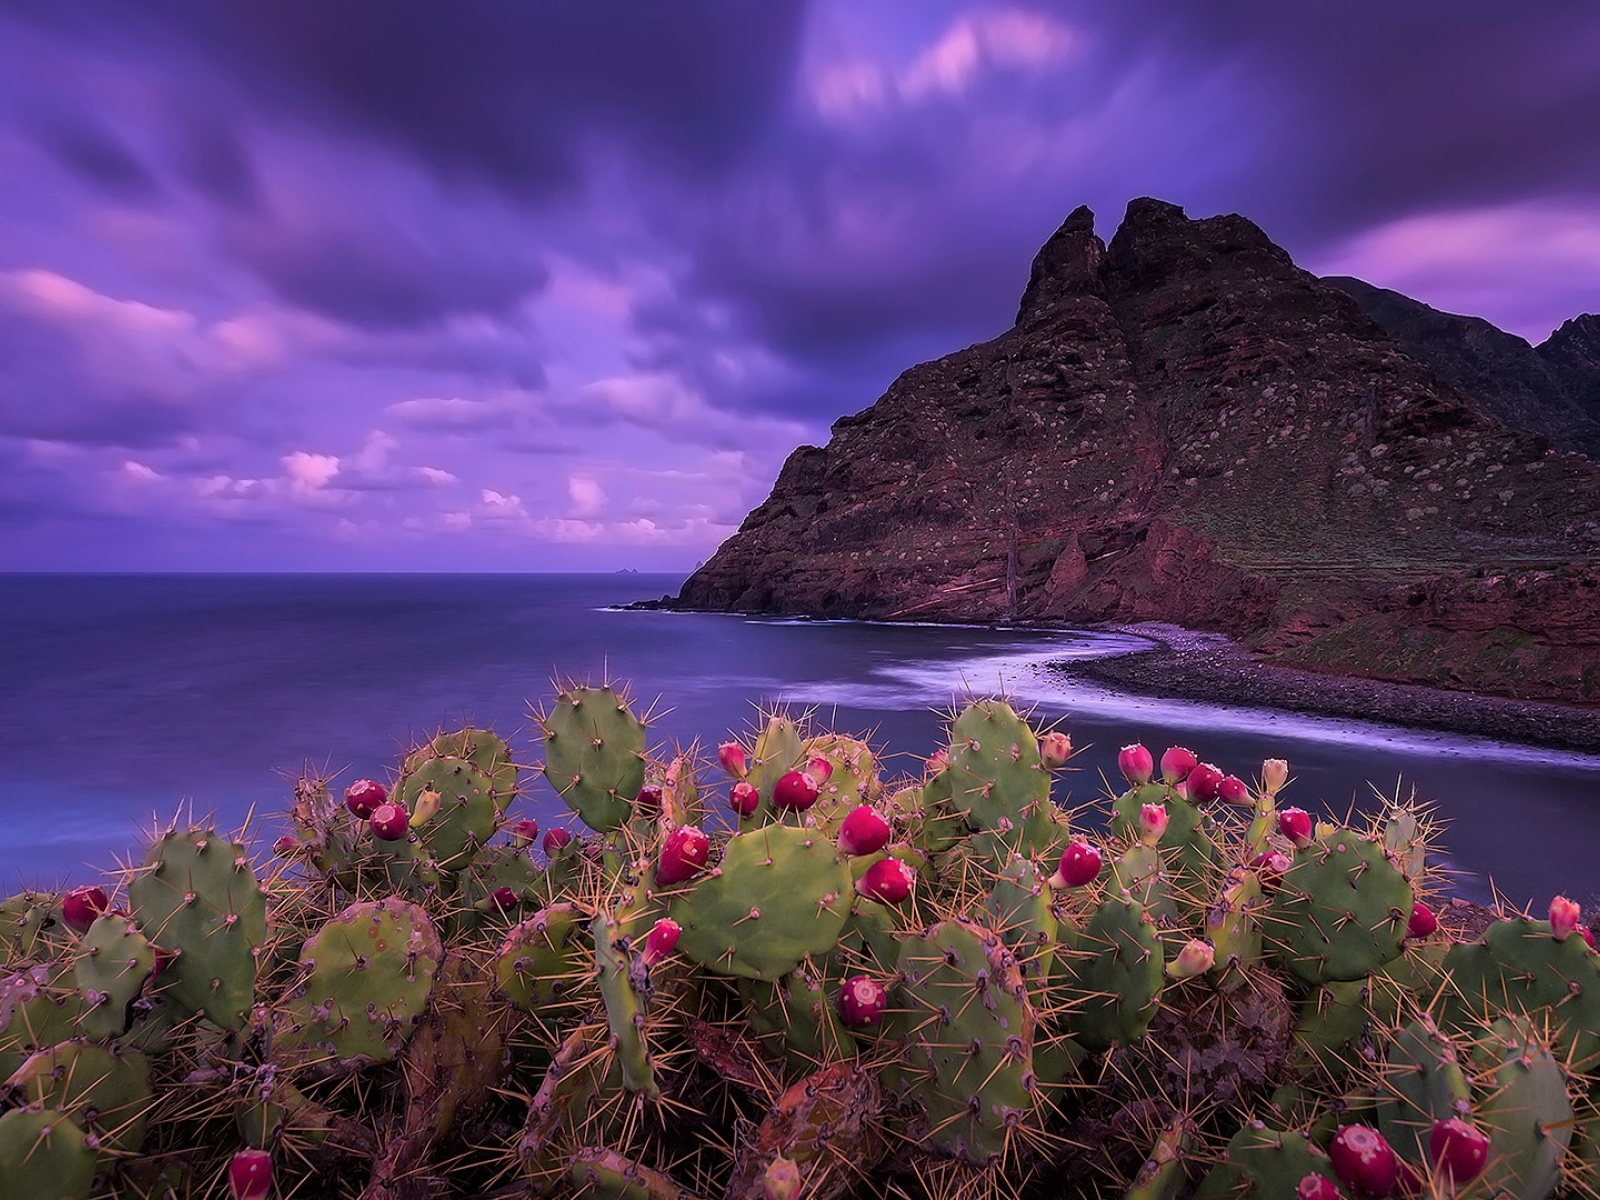 Кактусы на побережье на фоне красивого фиолетового неба